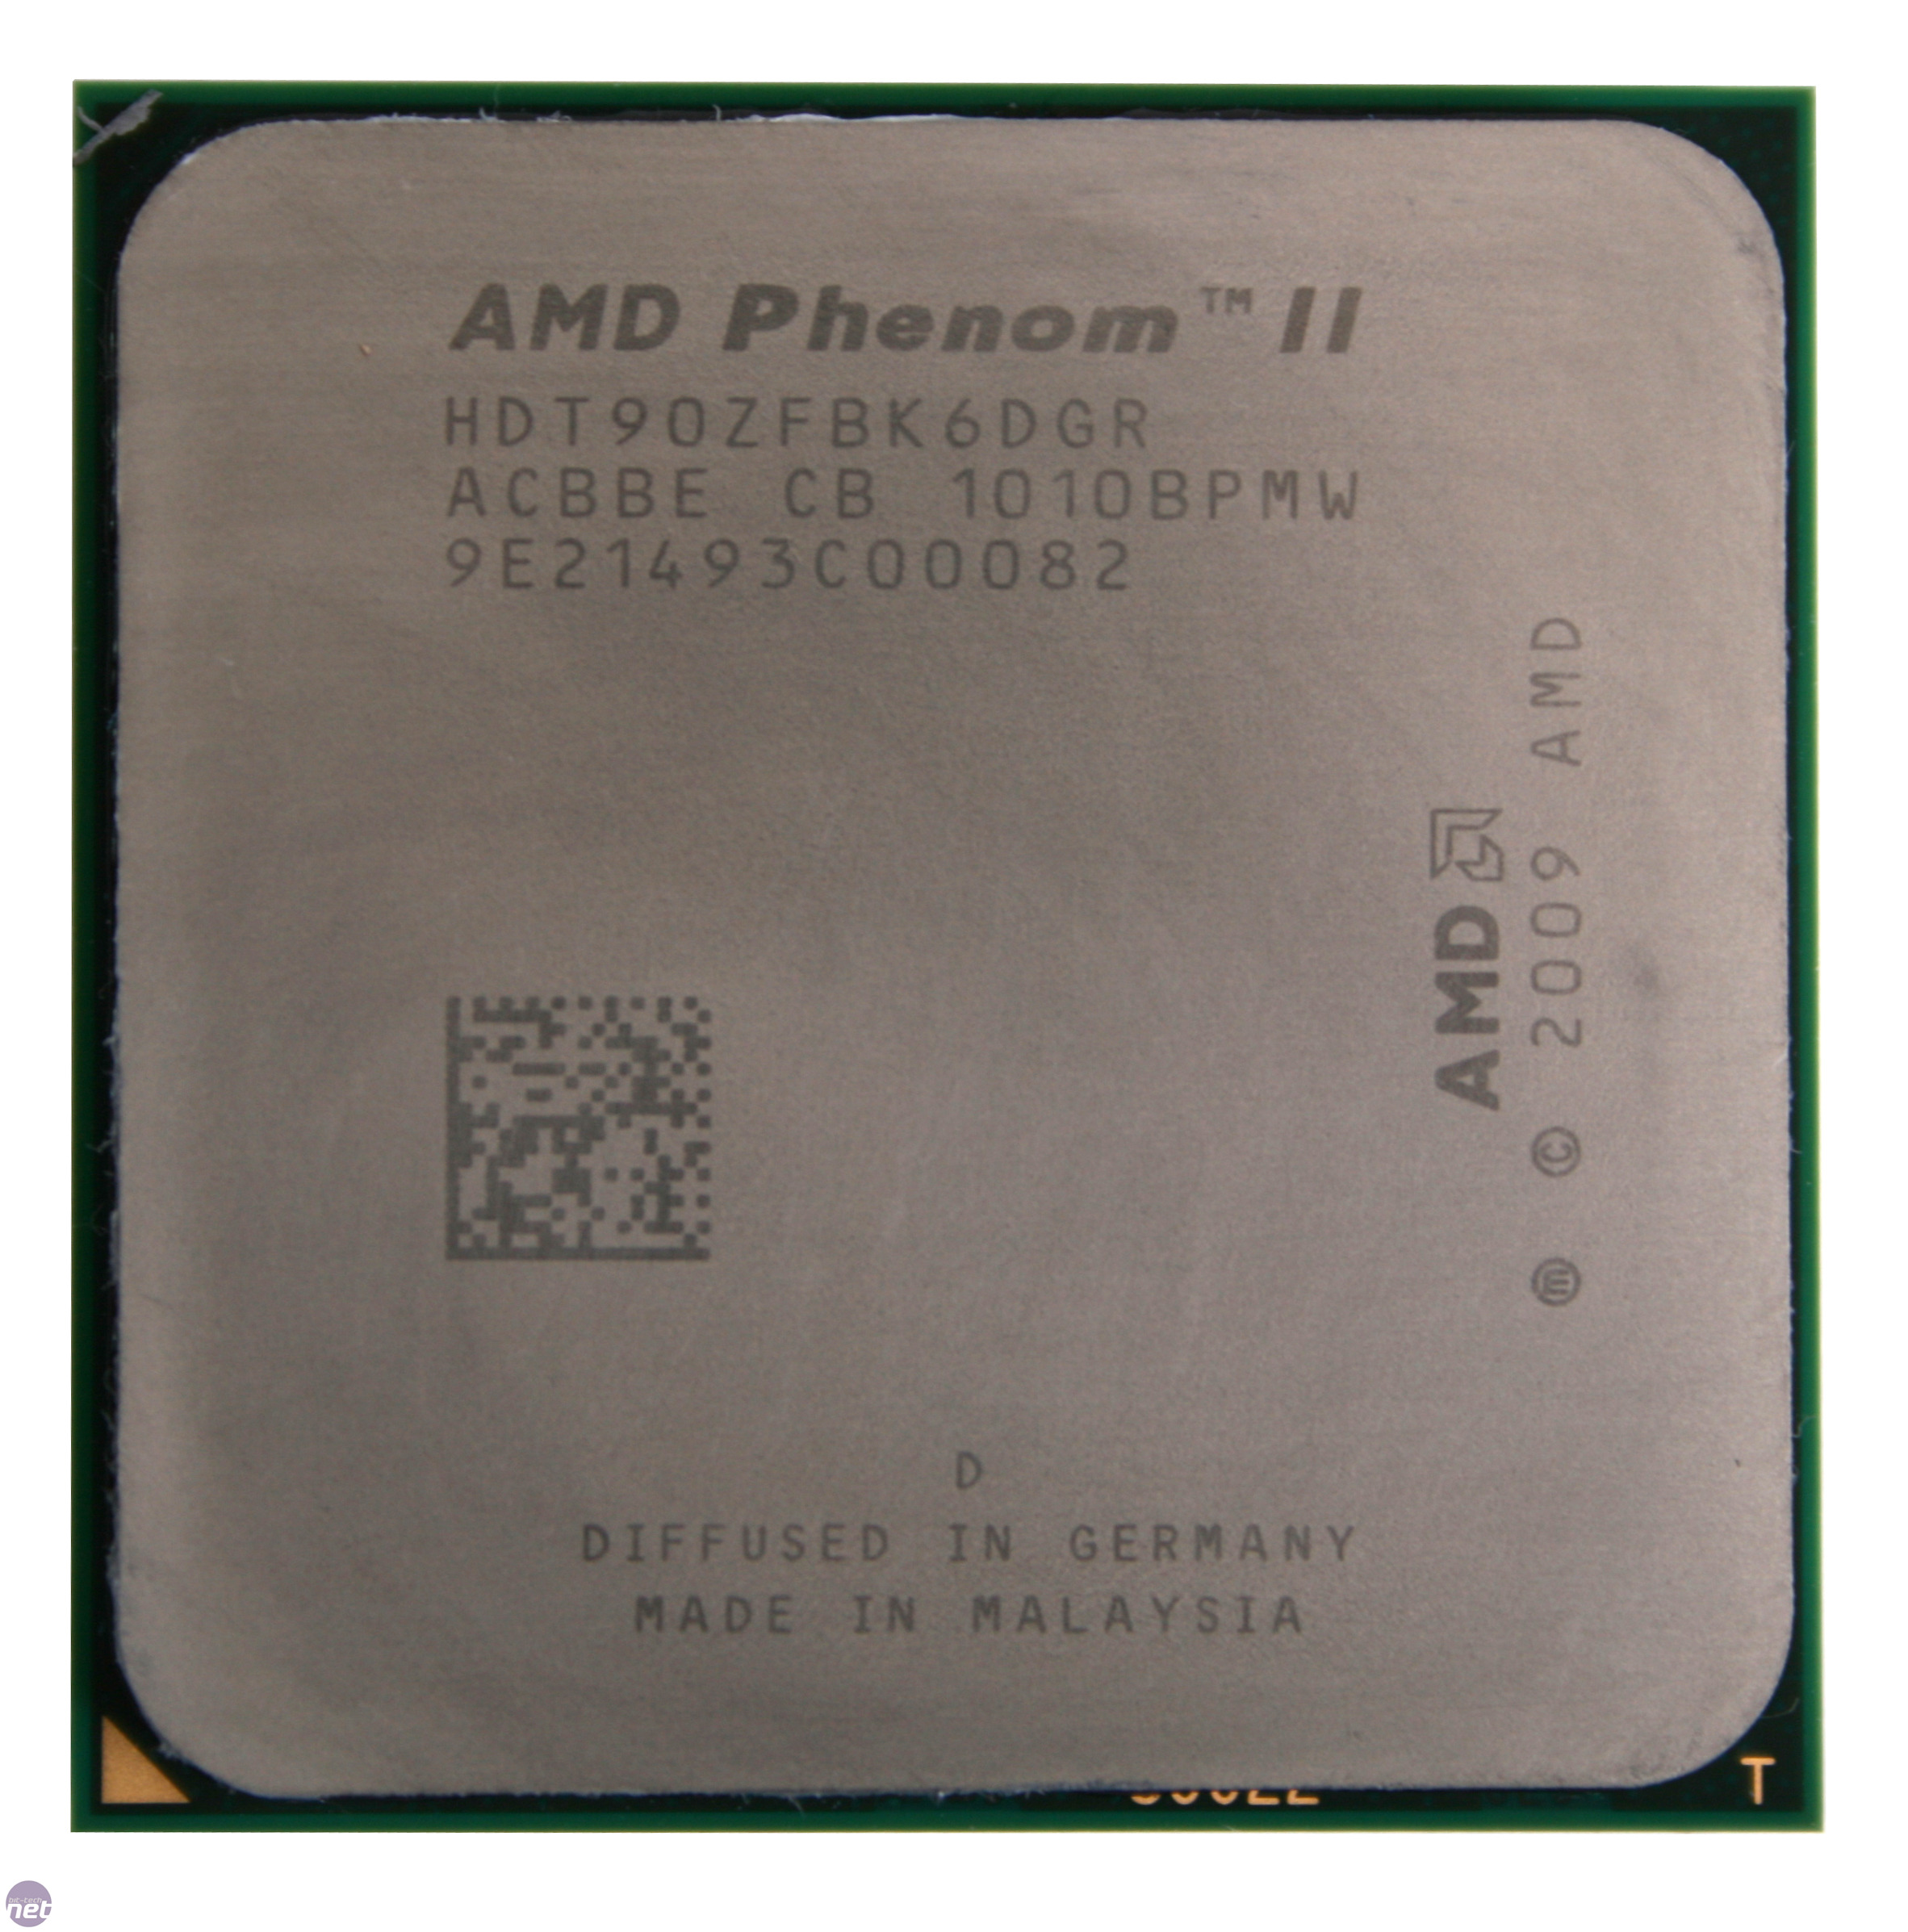 Amd phenom x6 1090t. AMD Phenom II x6 1090t. AMD Phenom II x6 1055t сокет am3. AMD Phenom II x6 1035t. Старый процессор АМД 6.